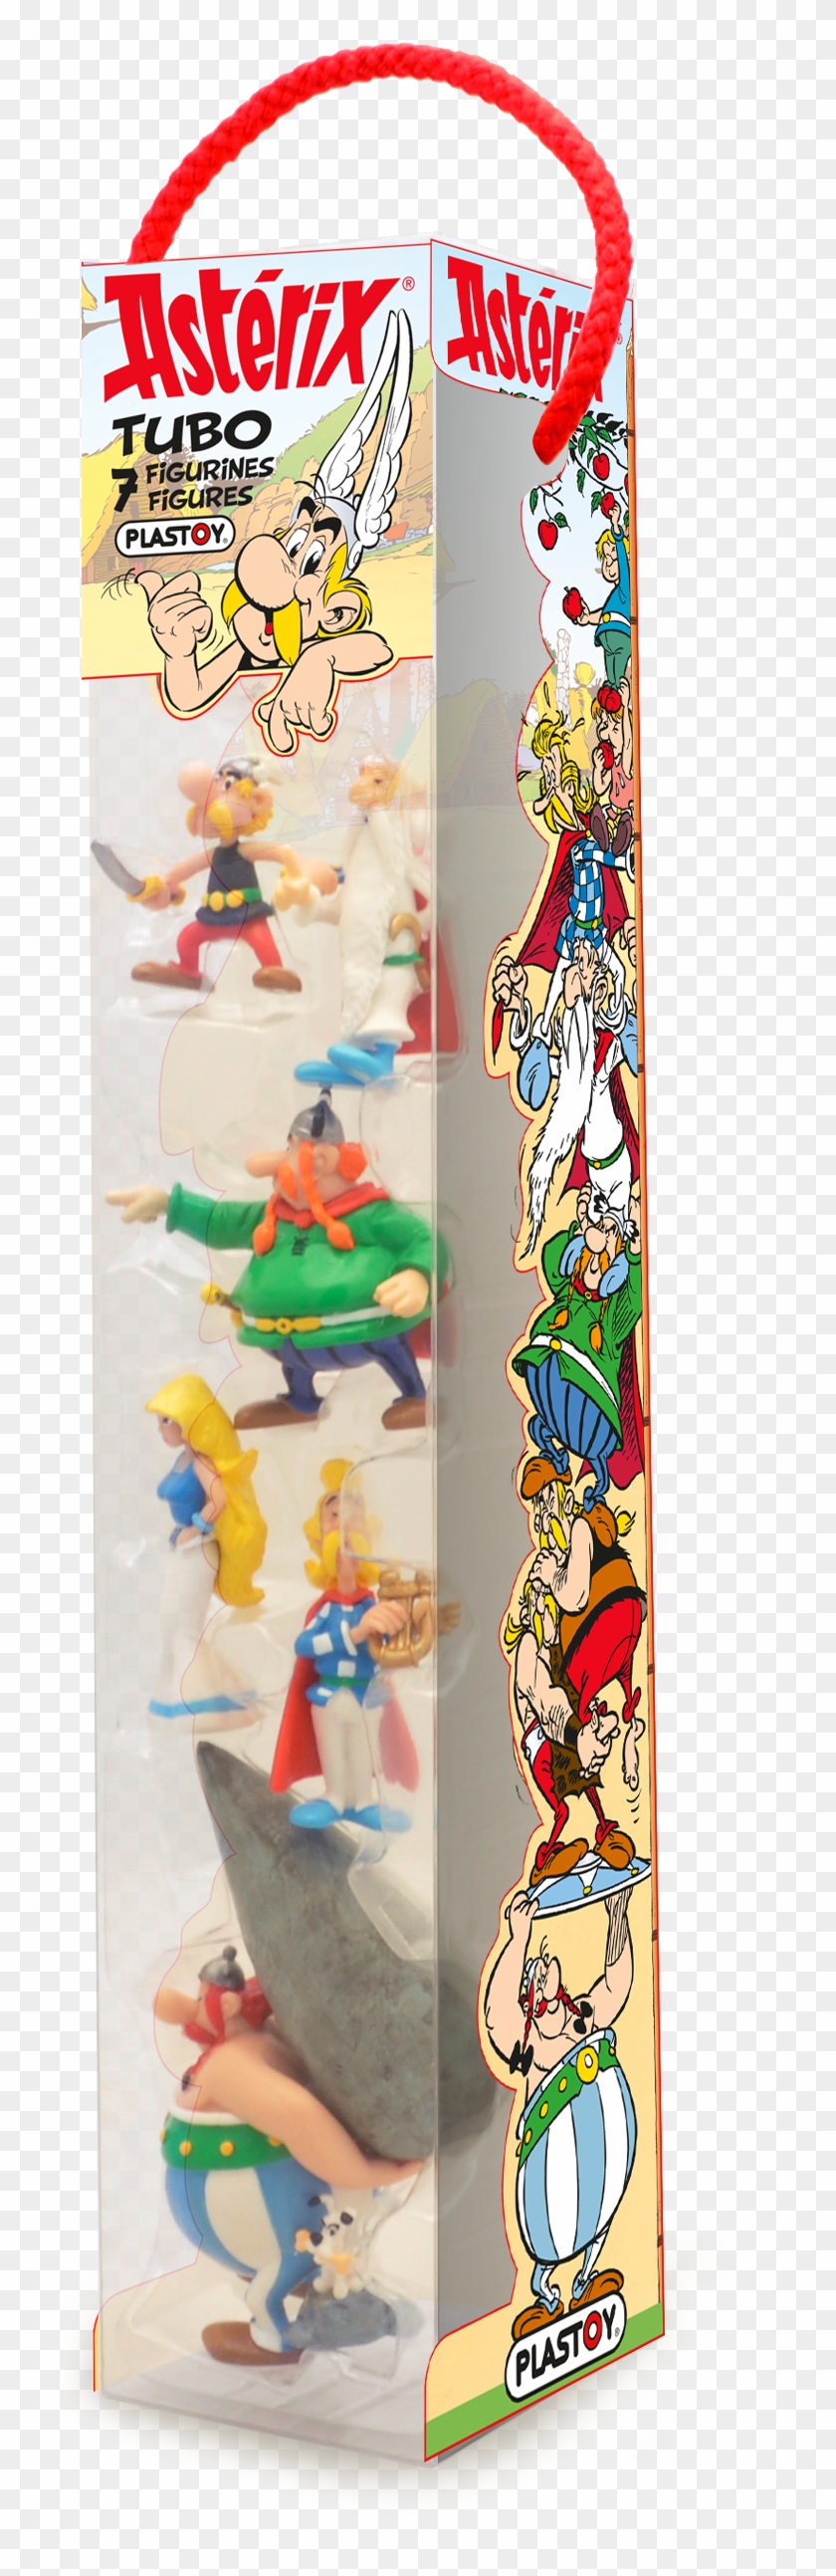 Tubo Asterix 70385-1 - Asterix Mini Figures Clipart #3613554